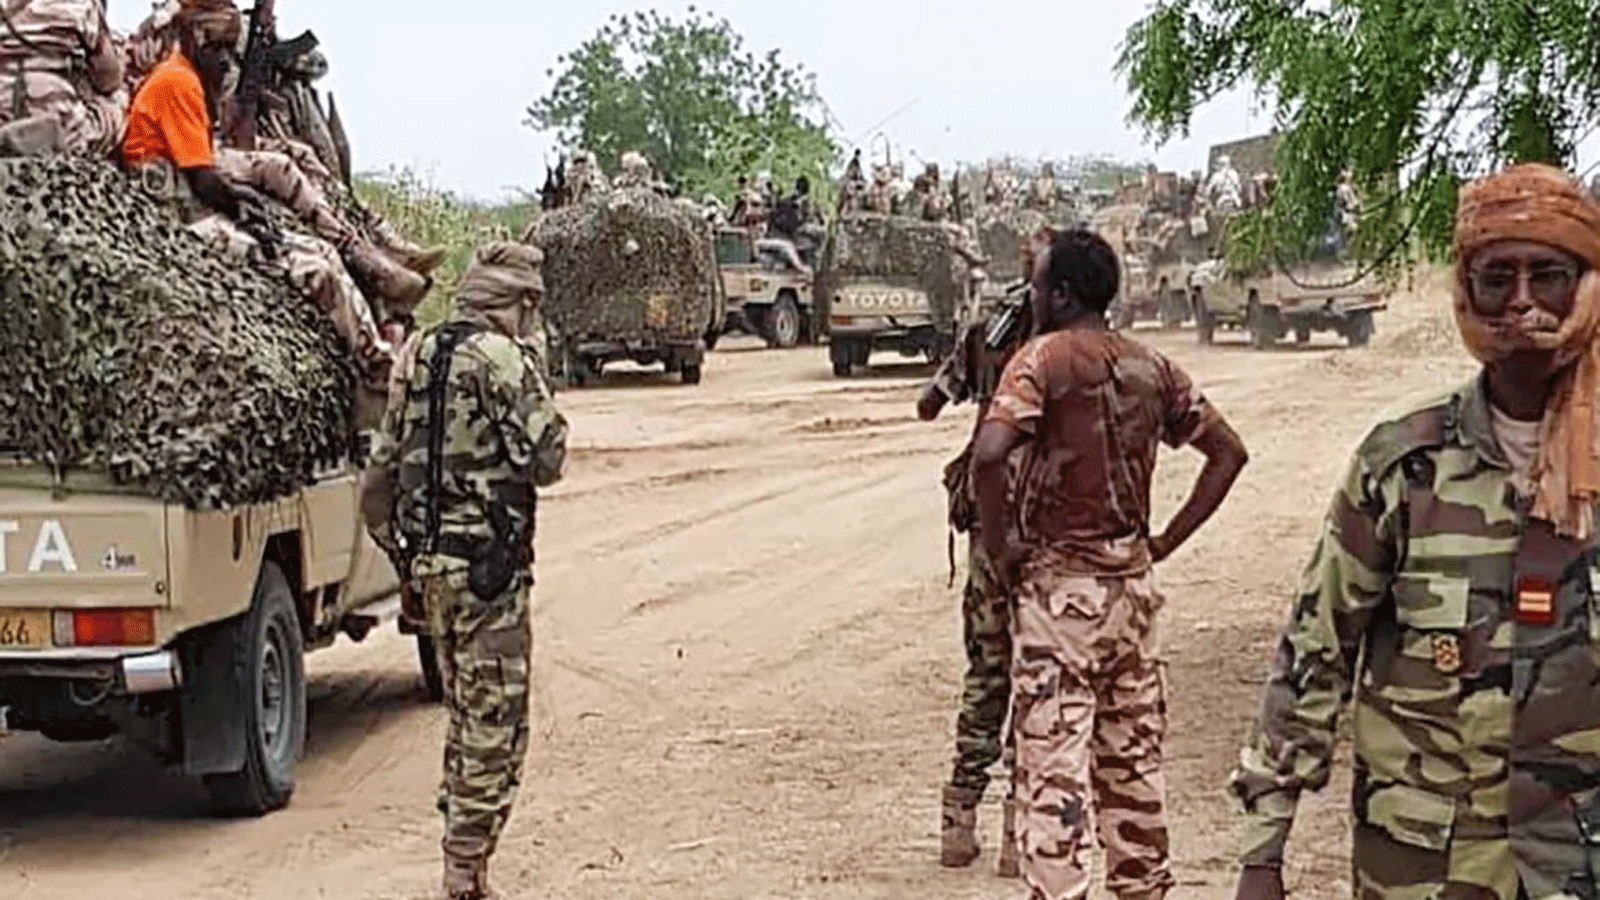 القوات النيجيرية والتشادية الملحقة بقوة المهام المشتركة متعددة الجنسيات تجري عمليات تطهير في منطقة بحيرة تشاد بولاية بورنو النيجيرية(فيسبوك)